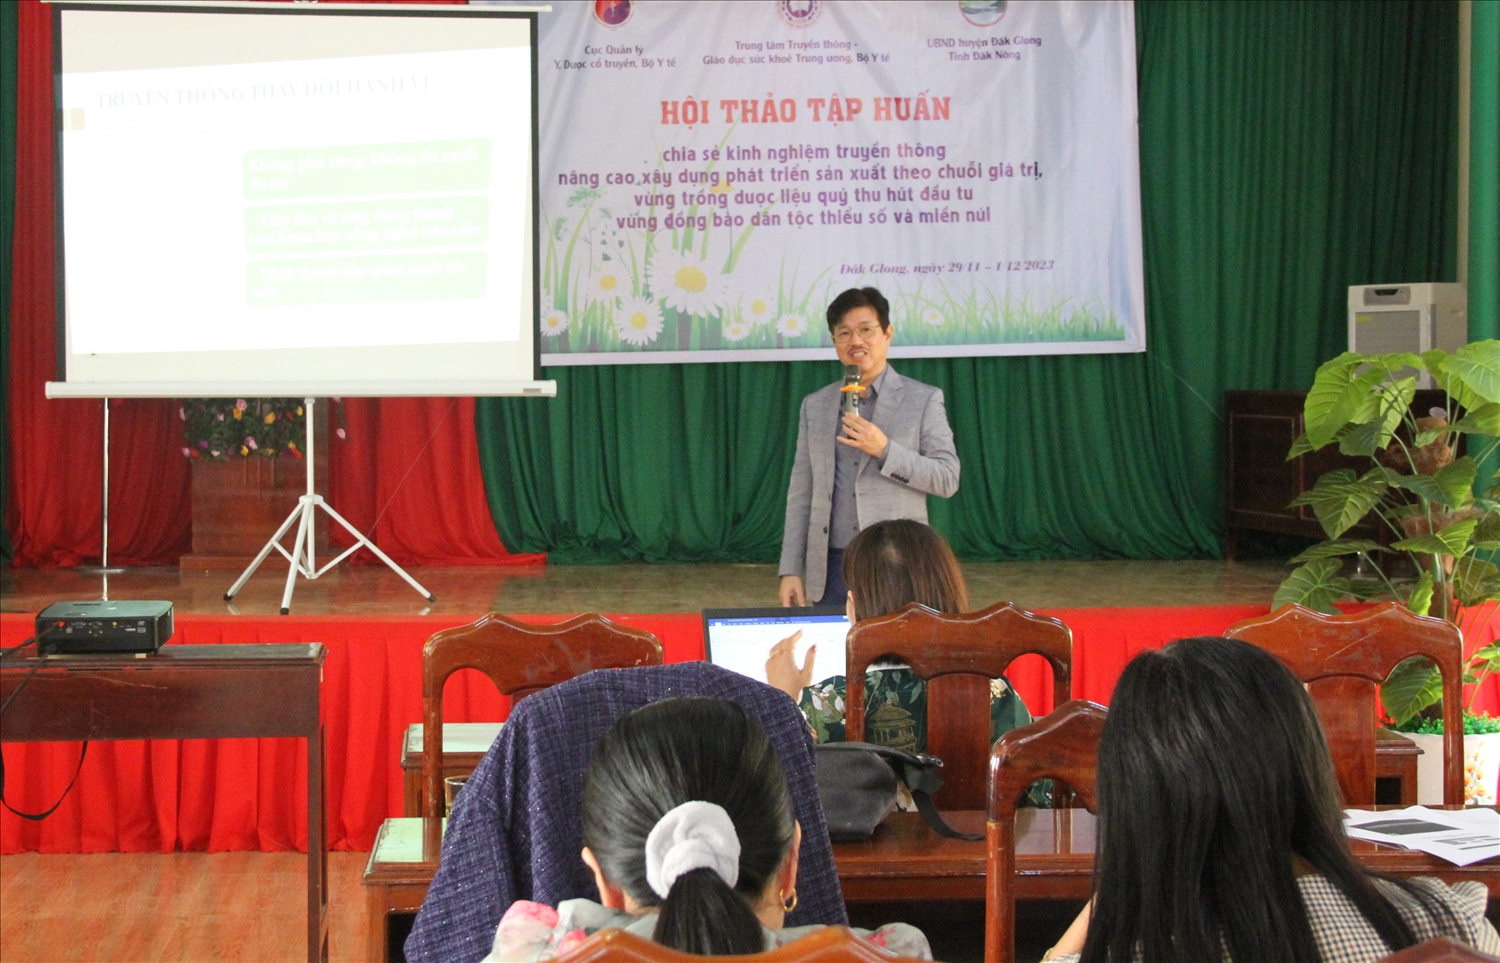 Hội thảo tập huấn chia sẻ kinh nghiệm truyền thông nâng cao, xây dựng phát triển sản xuất theo chuỗi giá trị, vùng trồng dược liệu quý của Bộ Y tế được tổ chức tại huyện Đắk Glong